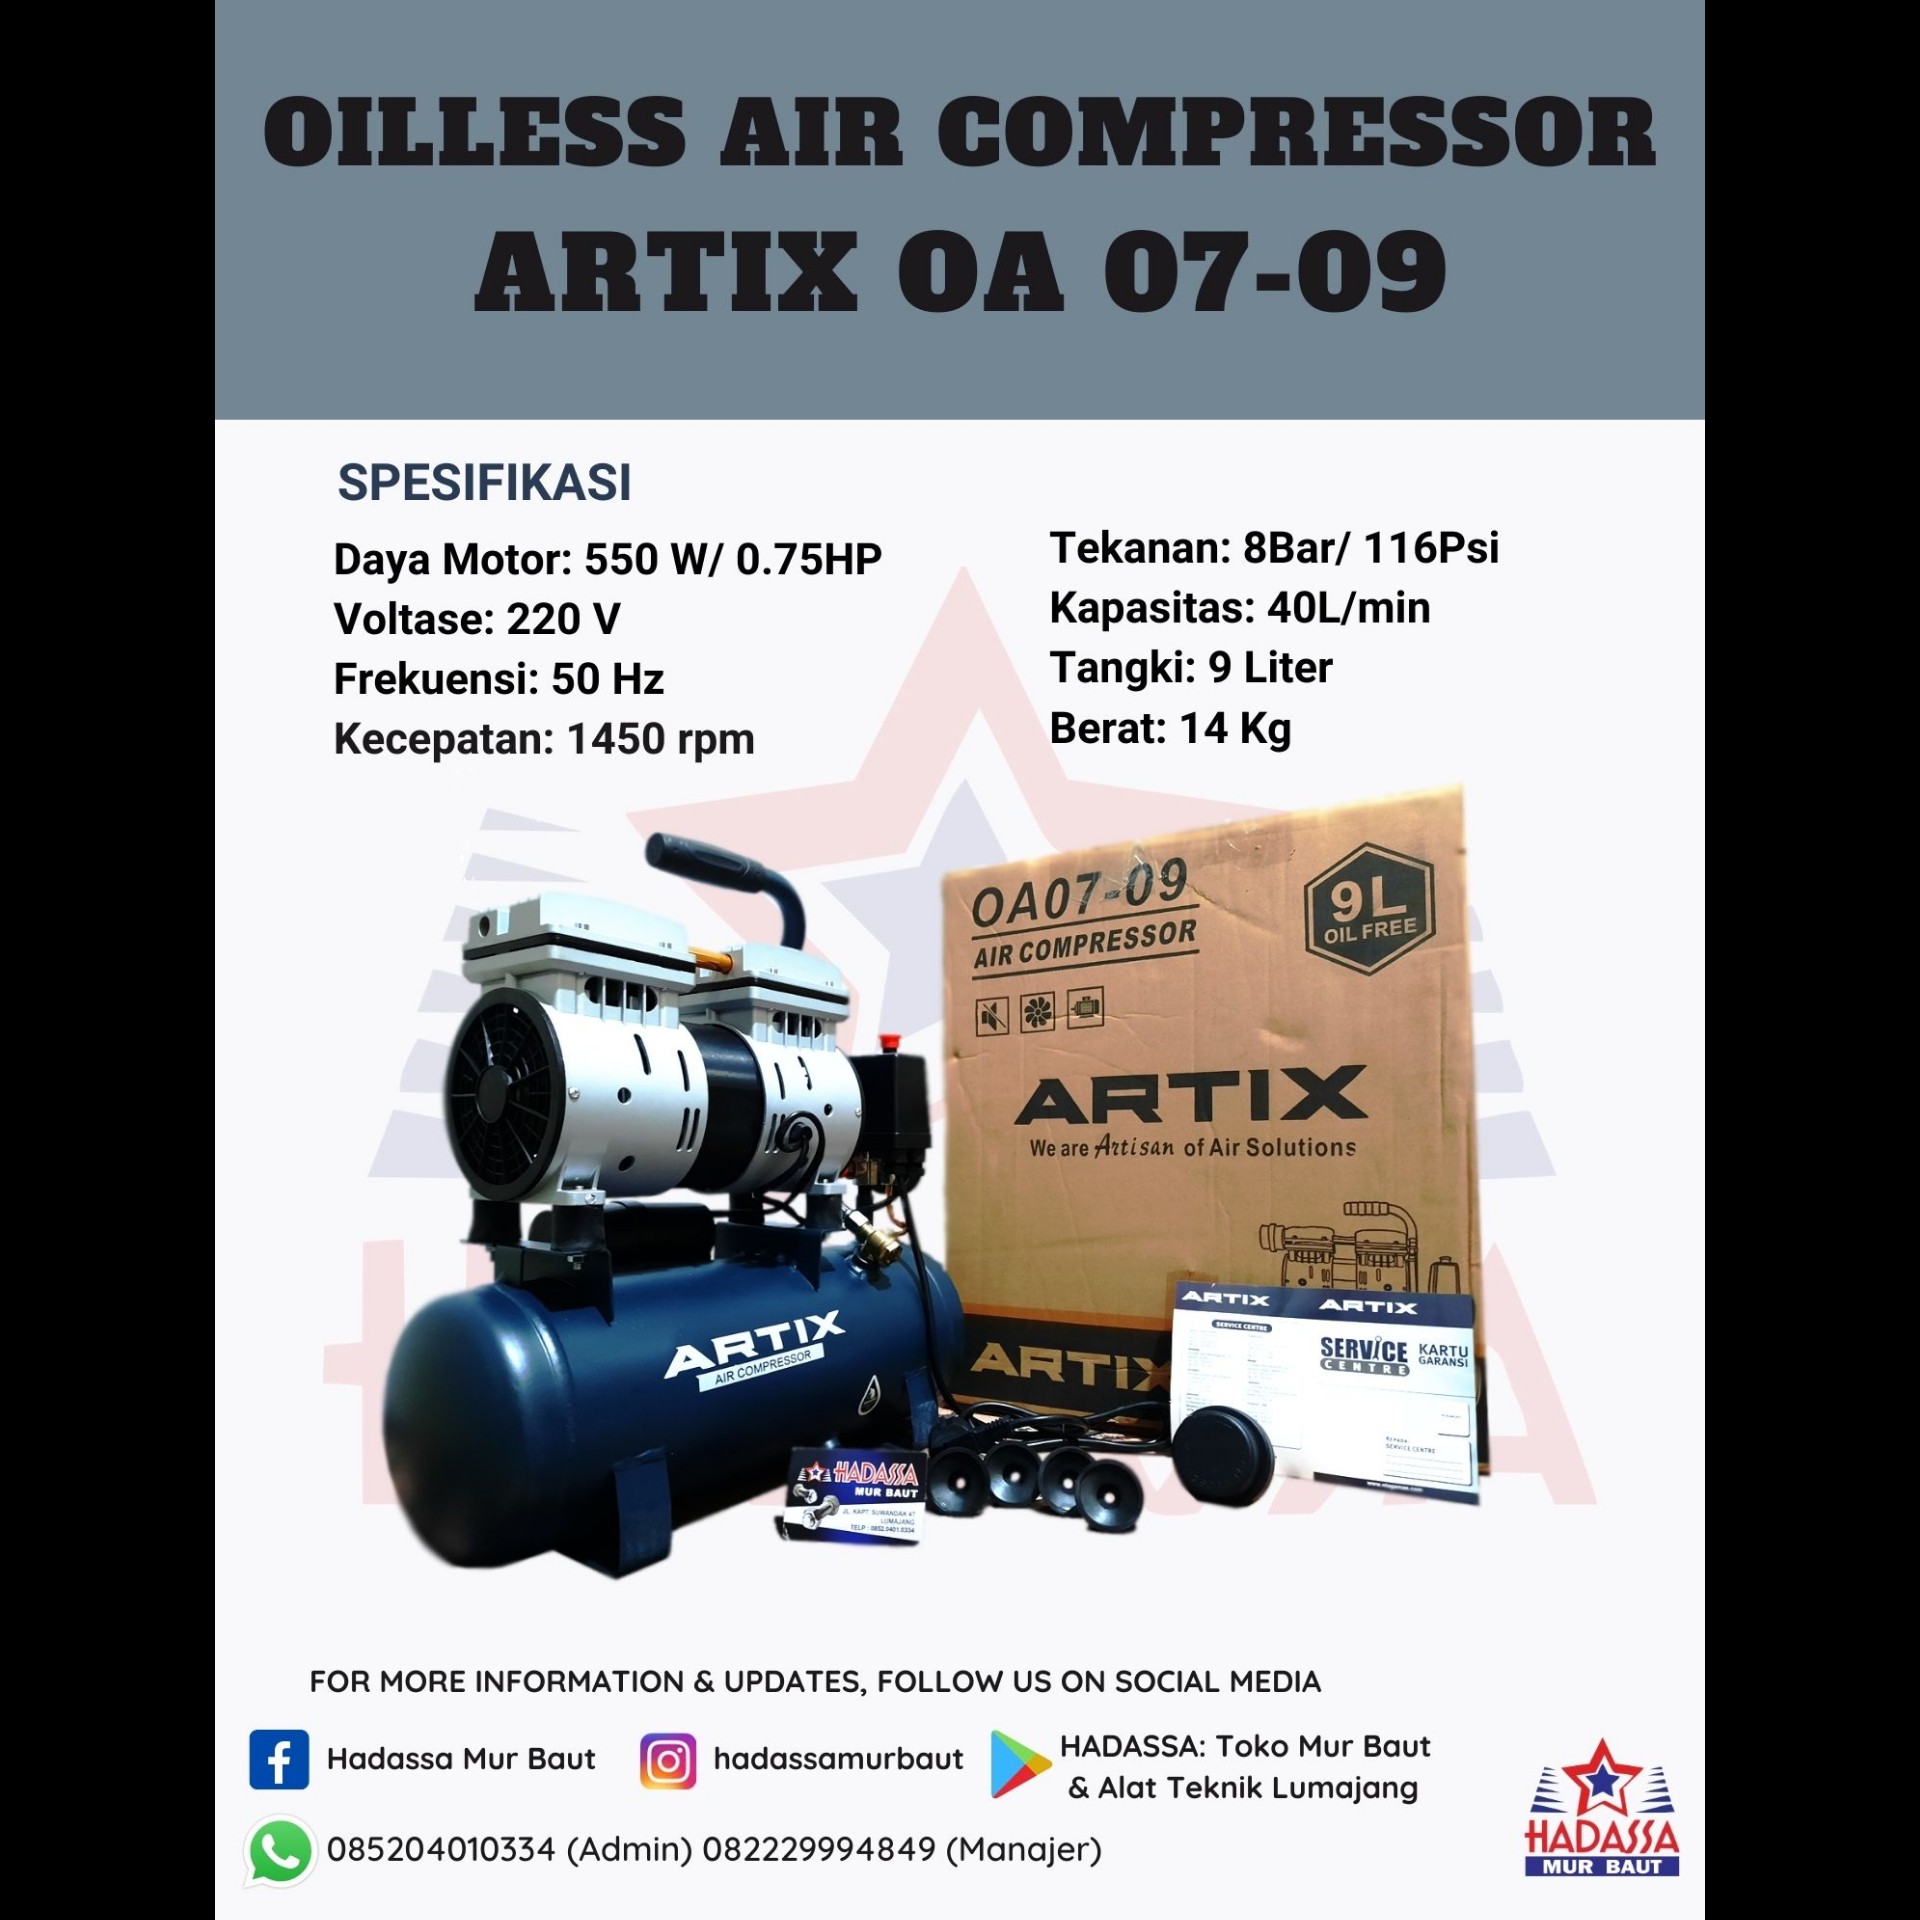 Oilless Air Compressor Artix OA 07-09